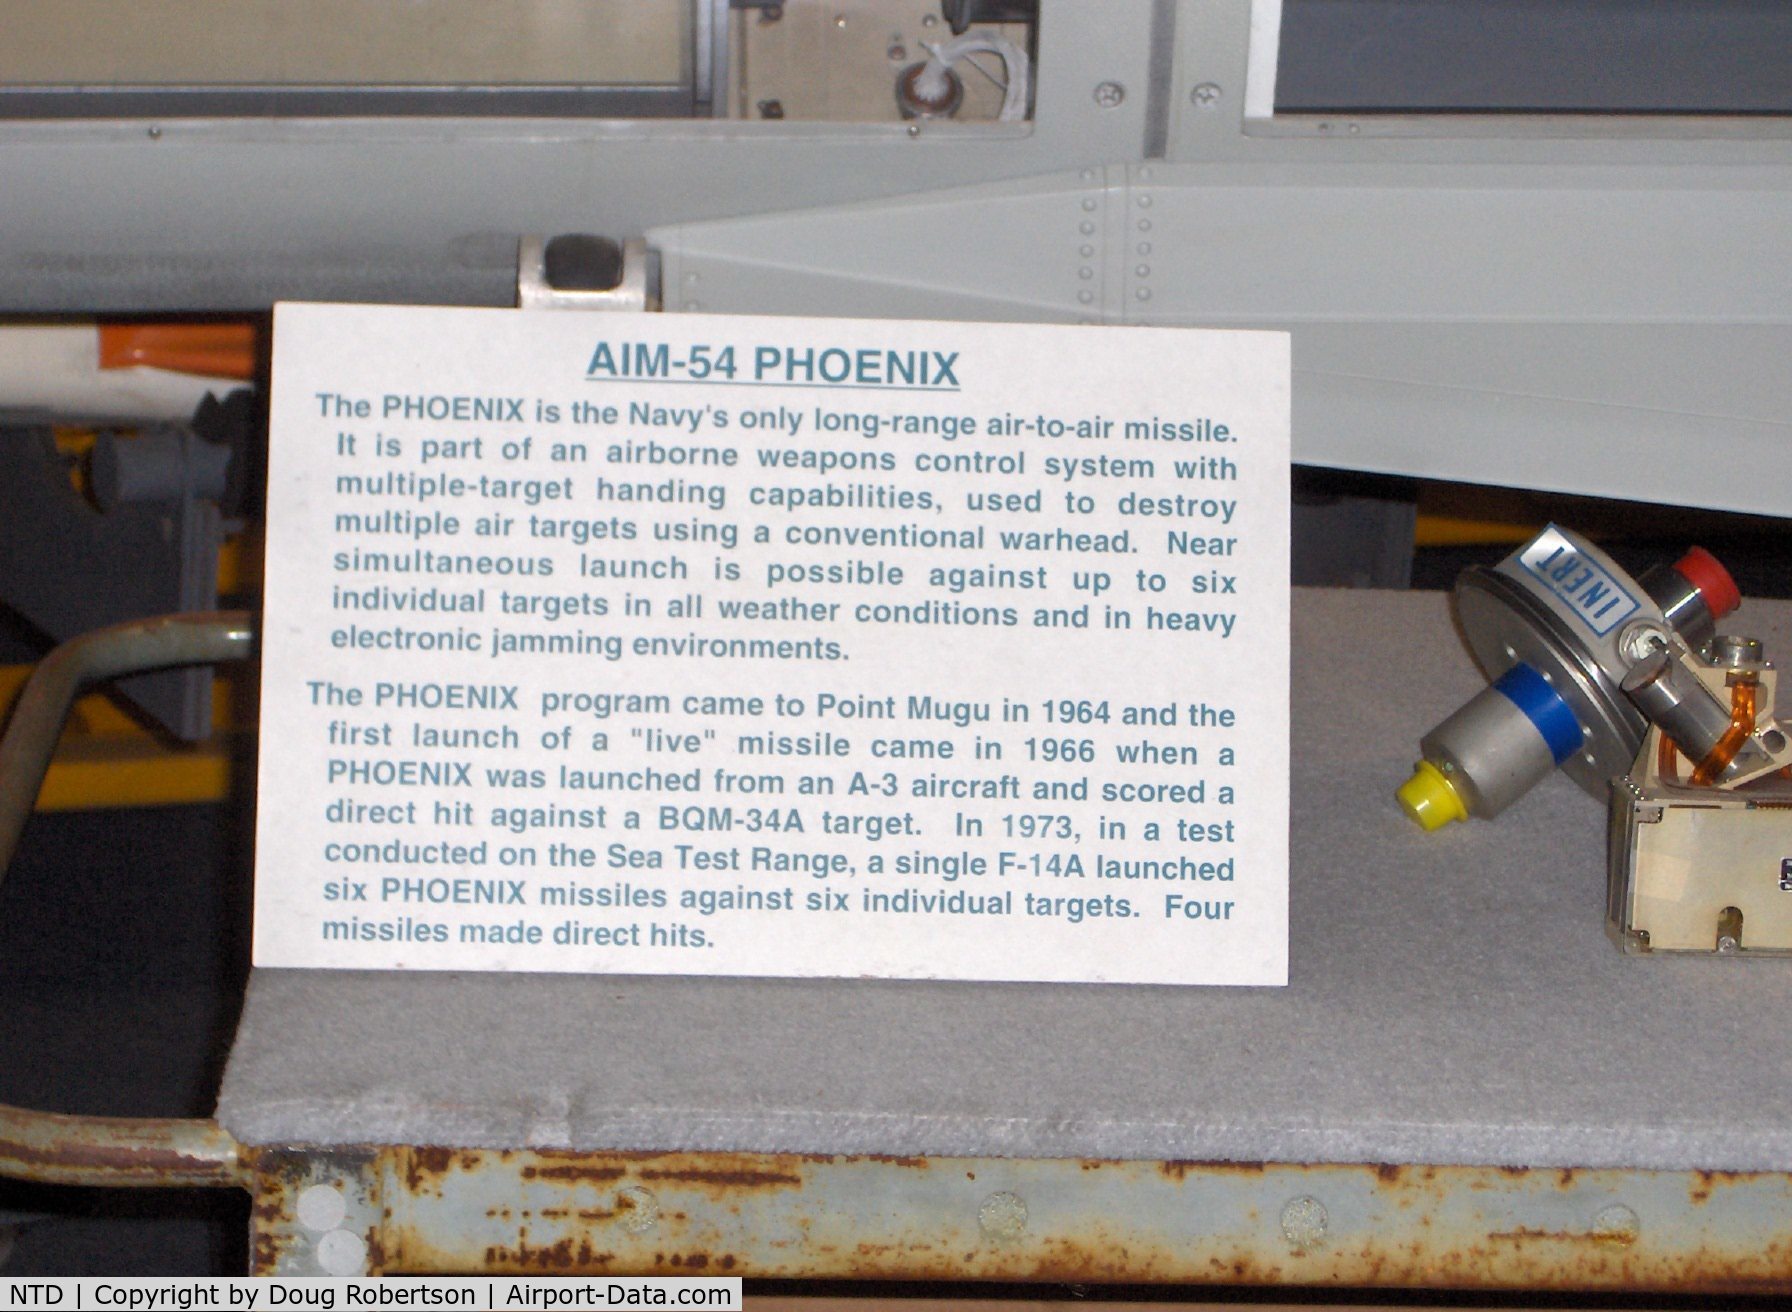 Point Mugu Nas (naval Base Ventura Co) Airport (NTD) - AIM-54 PHOENIX missile description